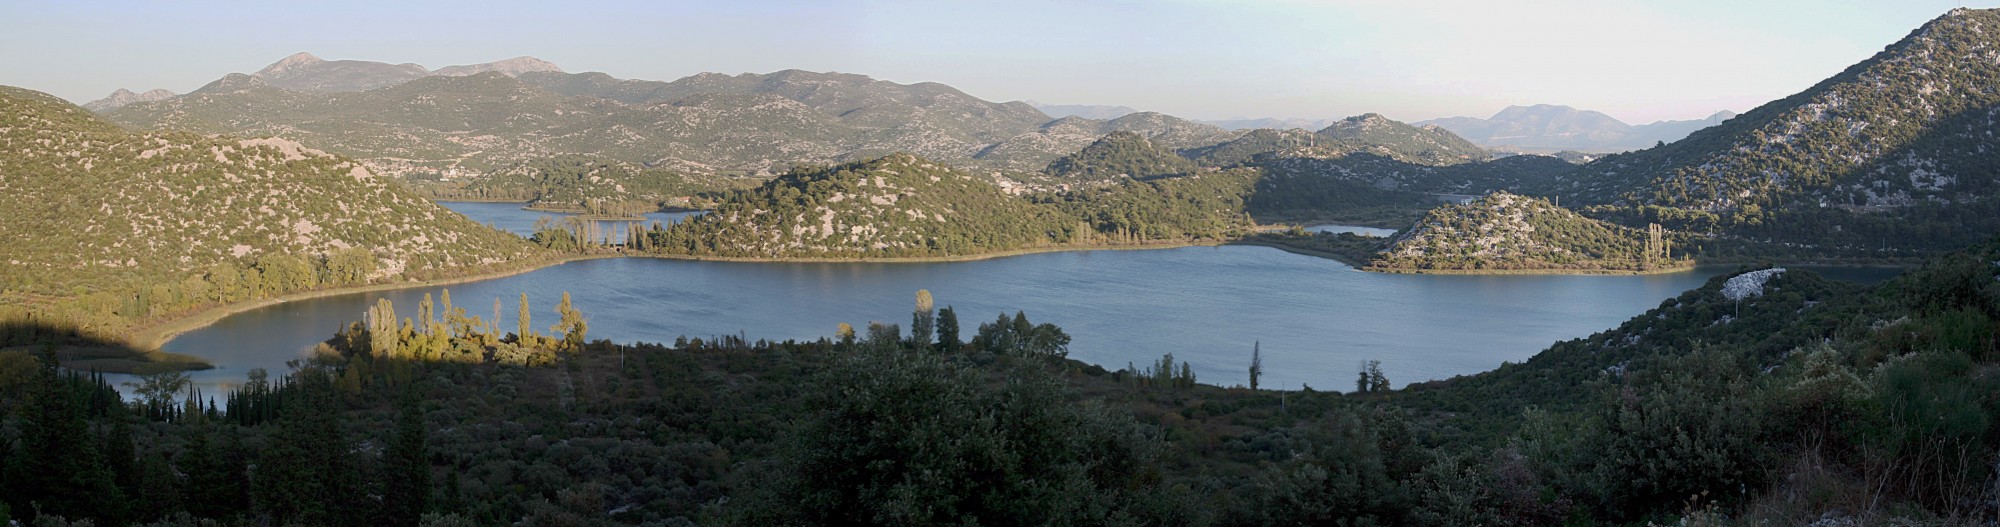 Baćina-Seen von der Jadranska Magistrala gesehen 8205,6,7